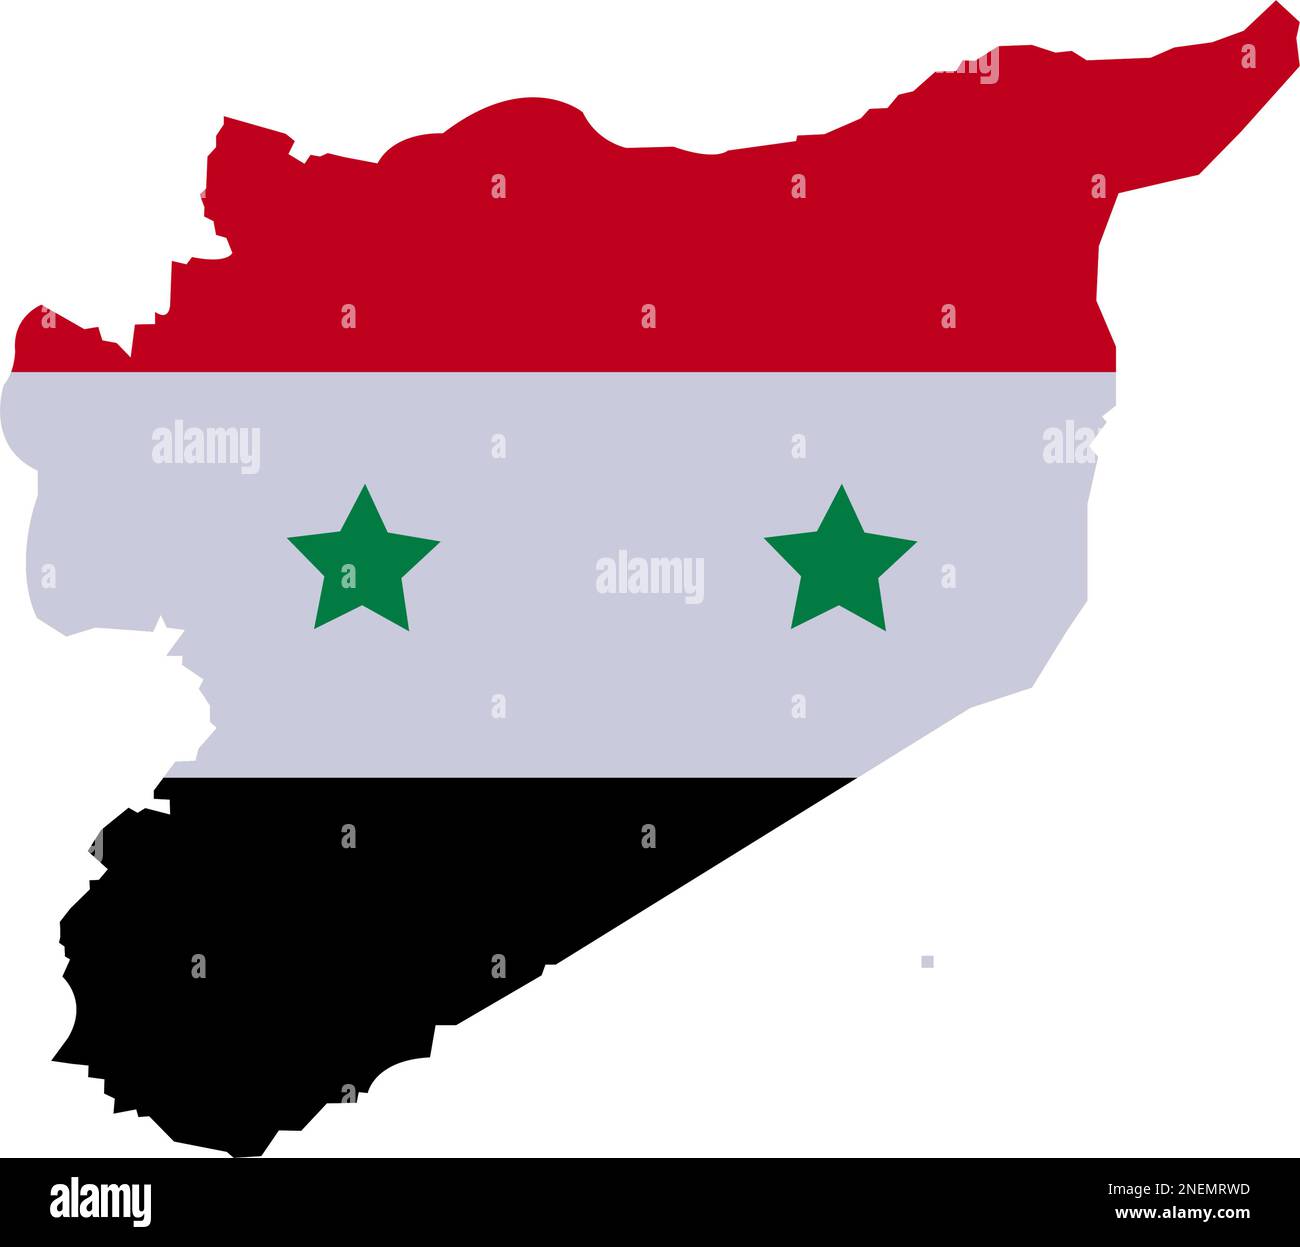 Carte de Syrie avec High Detailed. Carte de la Syrie remplie de symboles du drapeau national provinces syriennes. Carte syrienne avec rouge blanc et noir trois couleurs et étoile Illustration de Vecteur